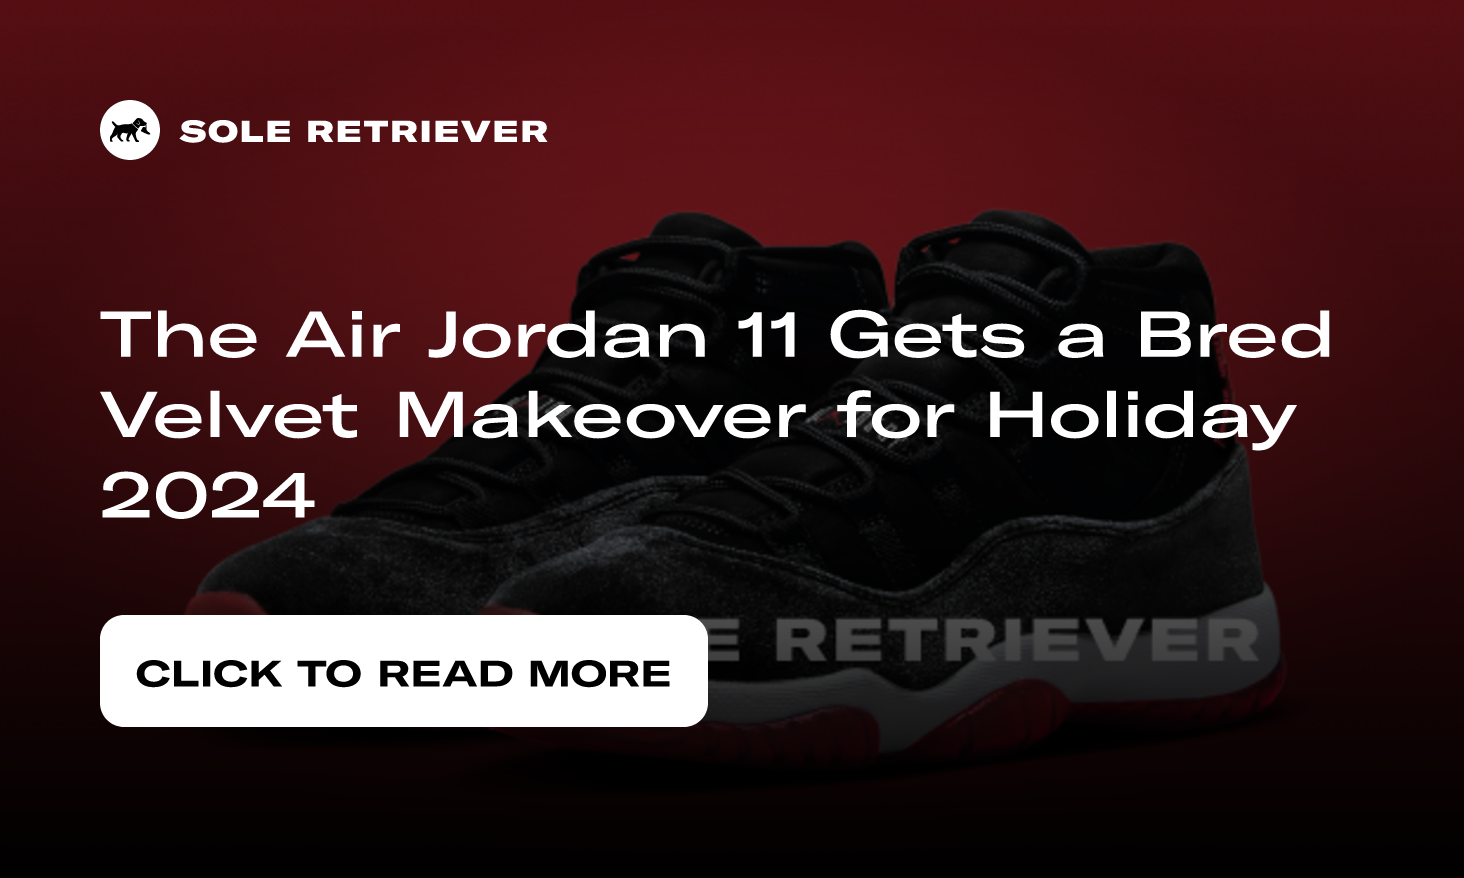 The Women's Air Jordan 11 Bred Velvet Releases Holiday 2024